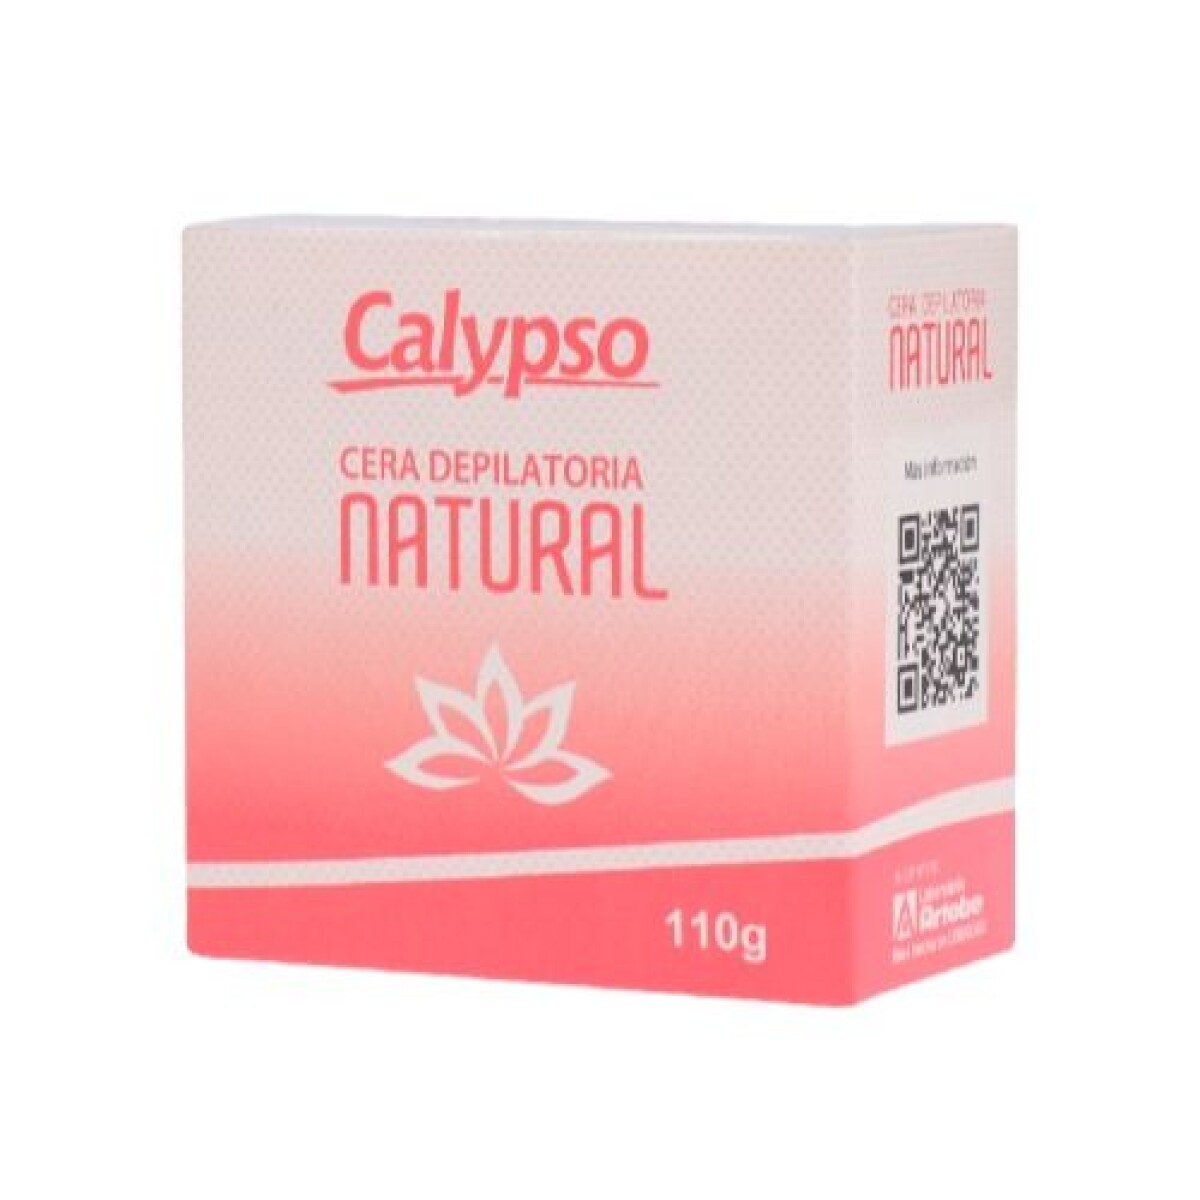 Calypso Cera Depilatoria- Natural 